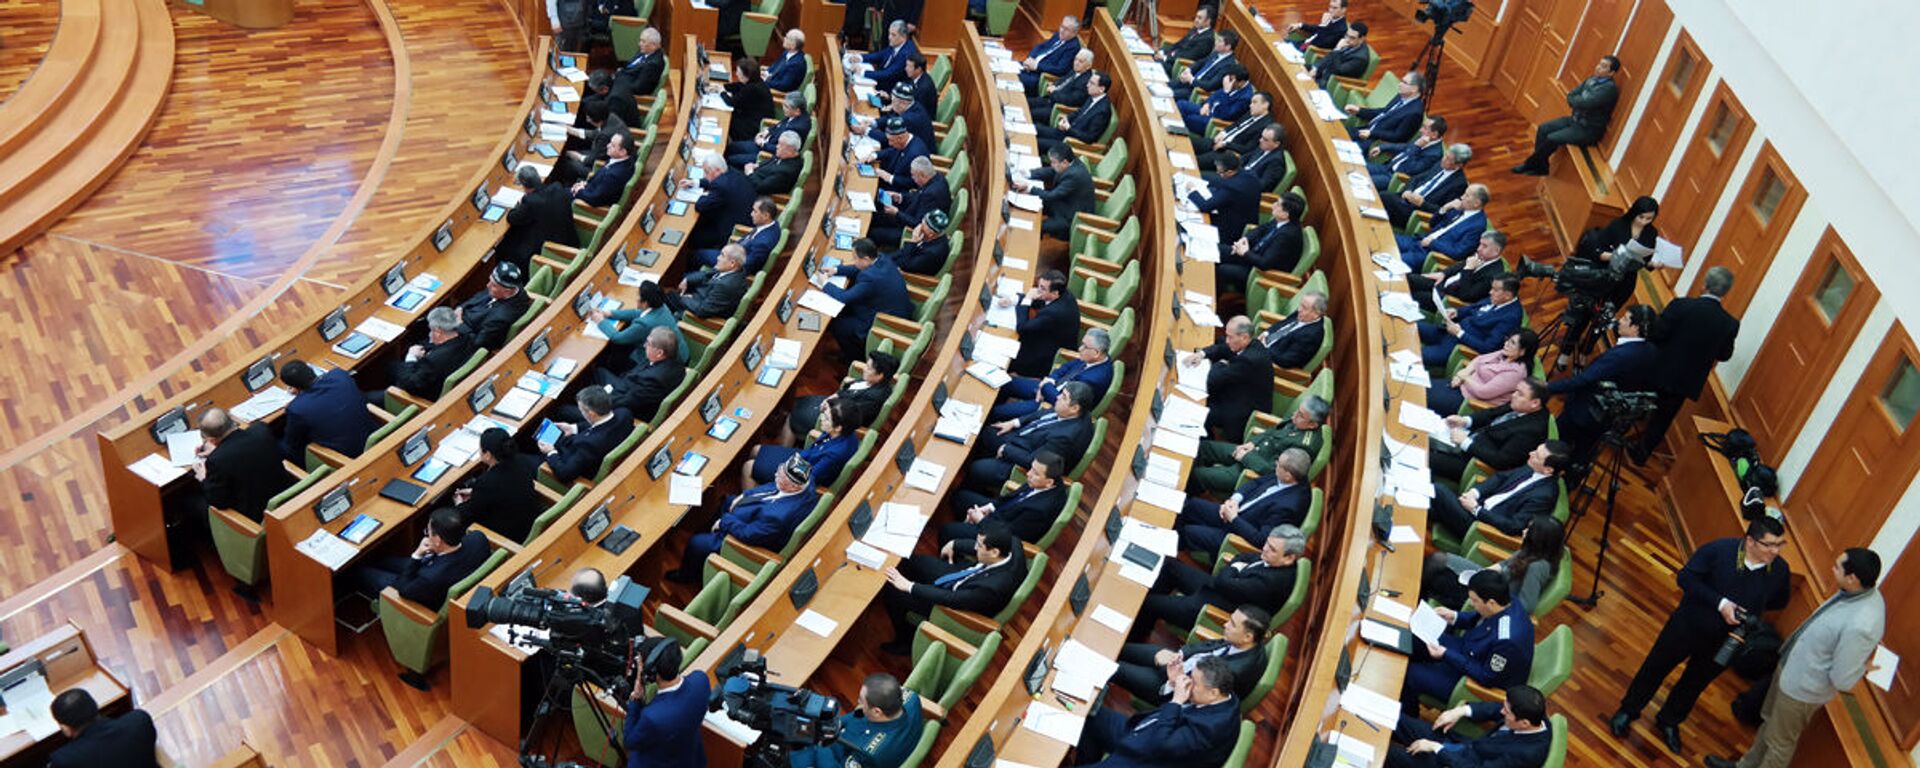 17-ое пленарное заседание Сената Олий Мажлиса РУз - Sputnik Узбекистан, 1920, 26.12.2018